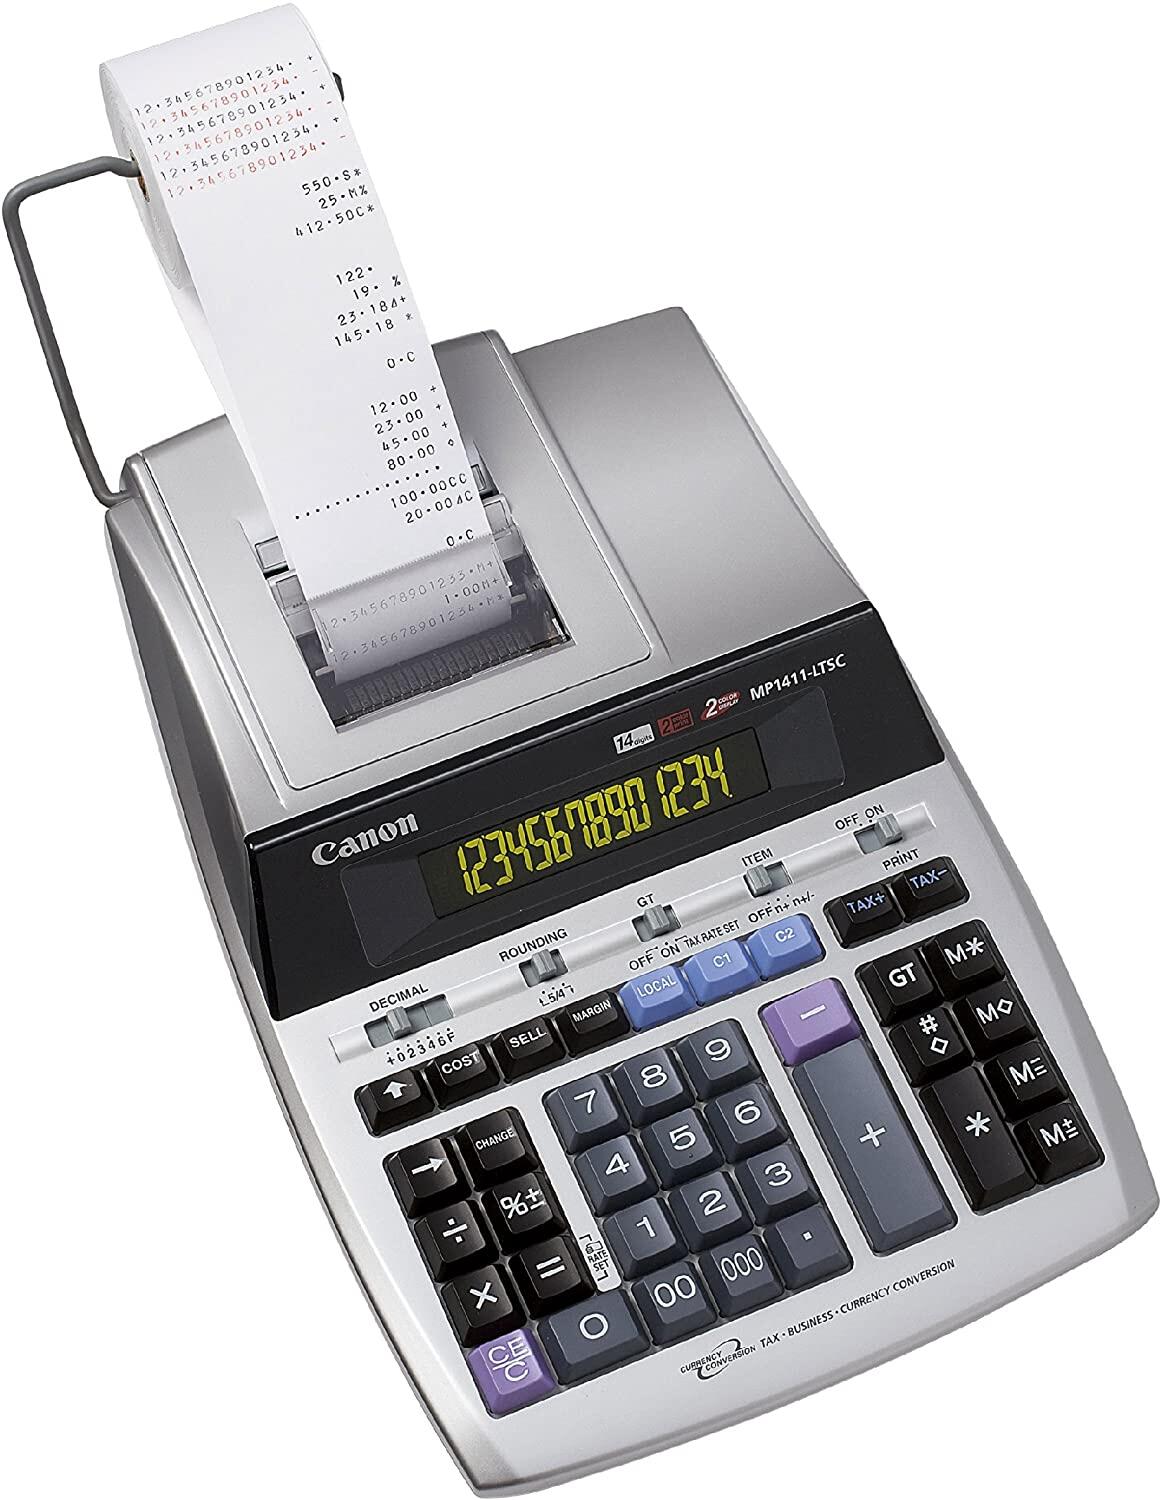 Canon MP1411-LTSC Desktop Druckrechner silver (2497B001) kalkulators